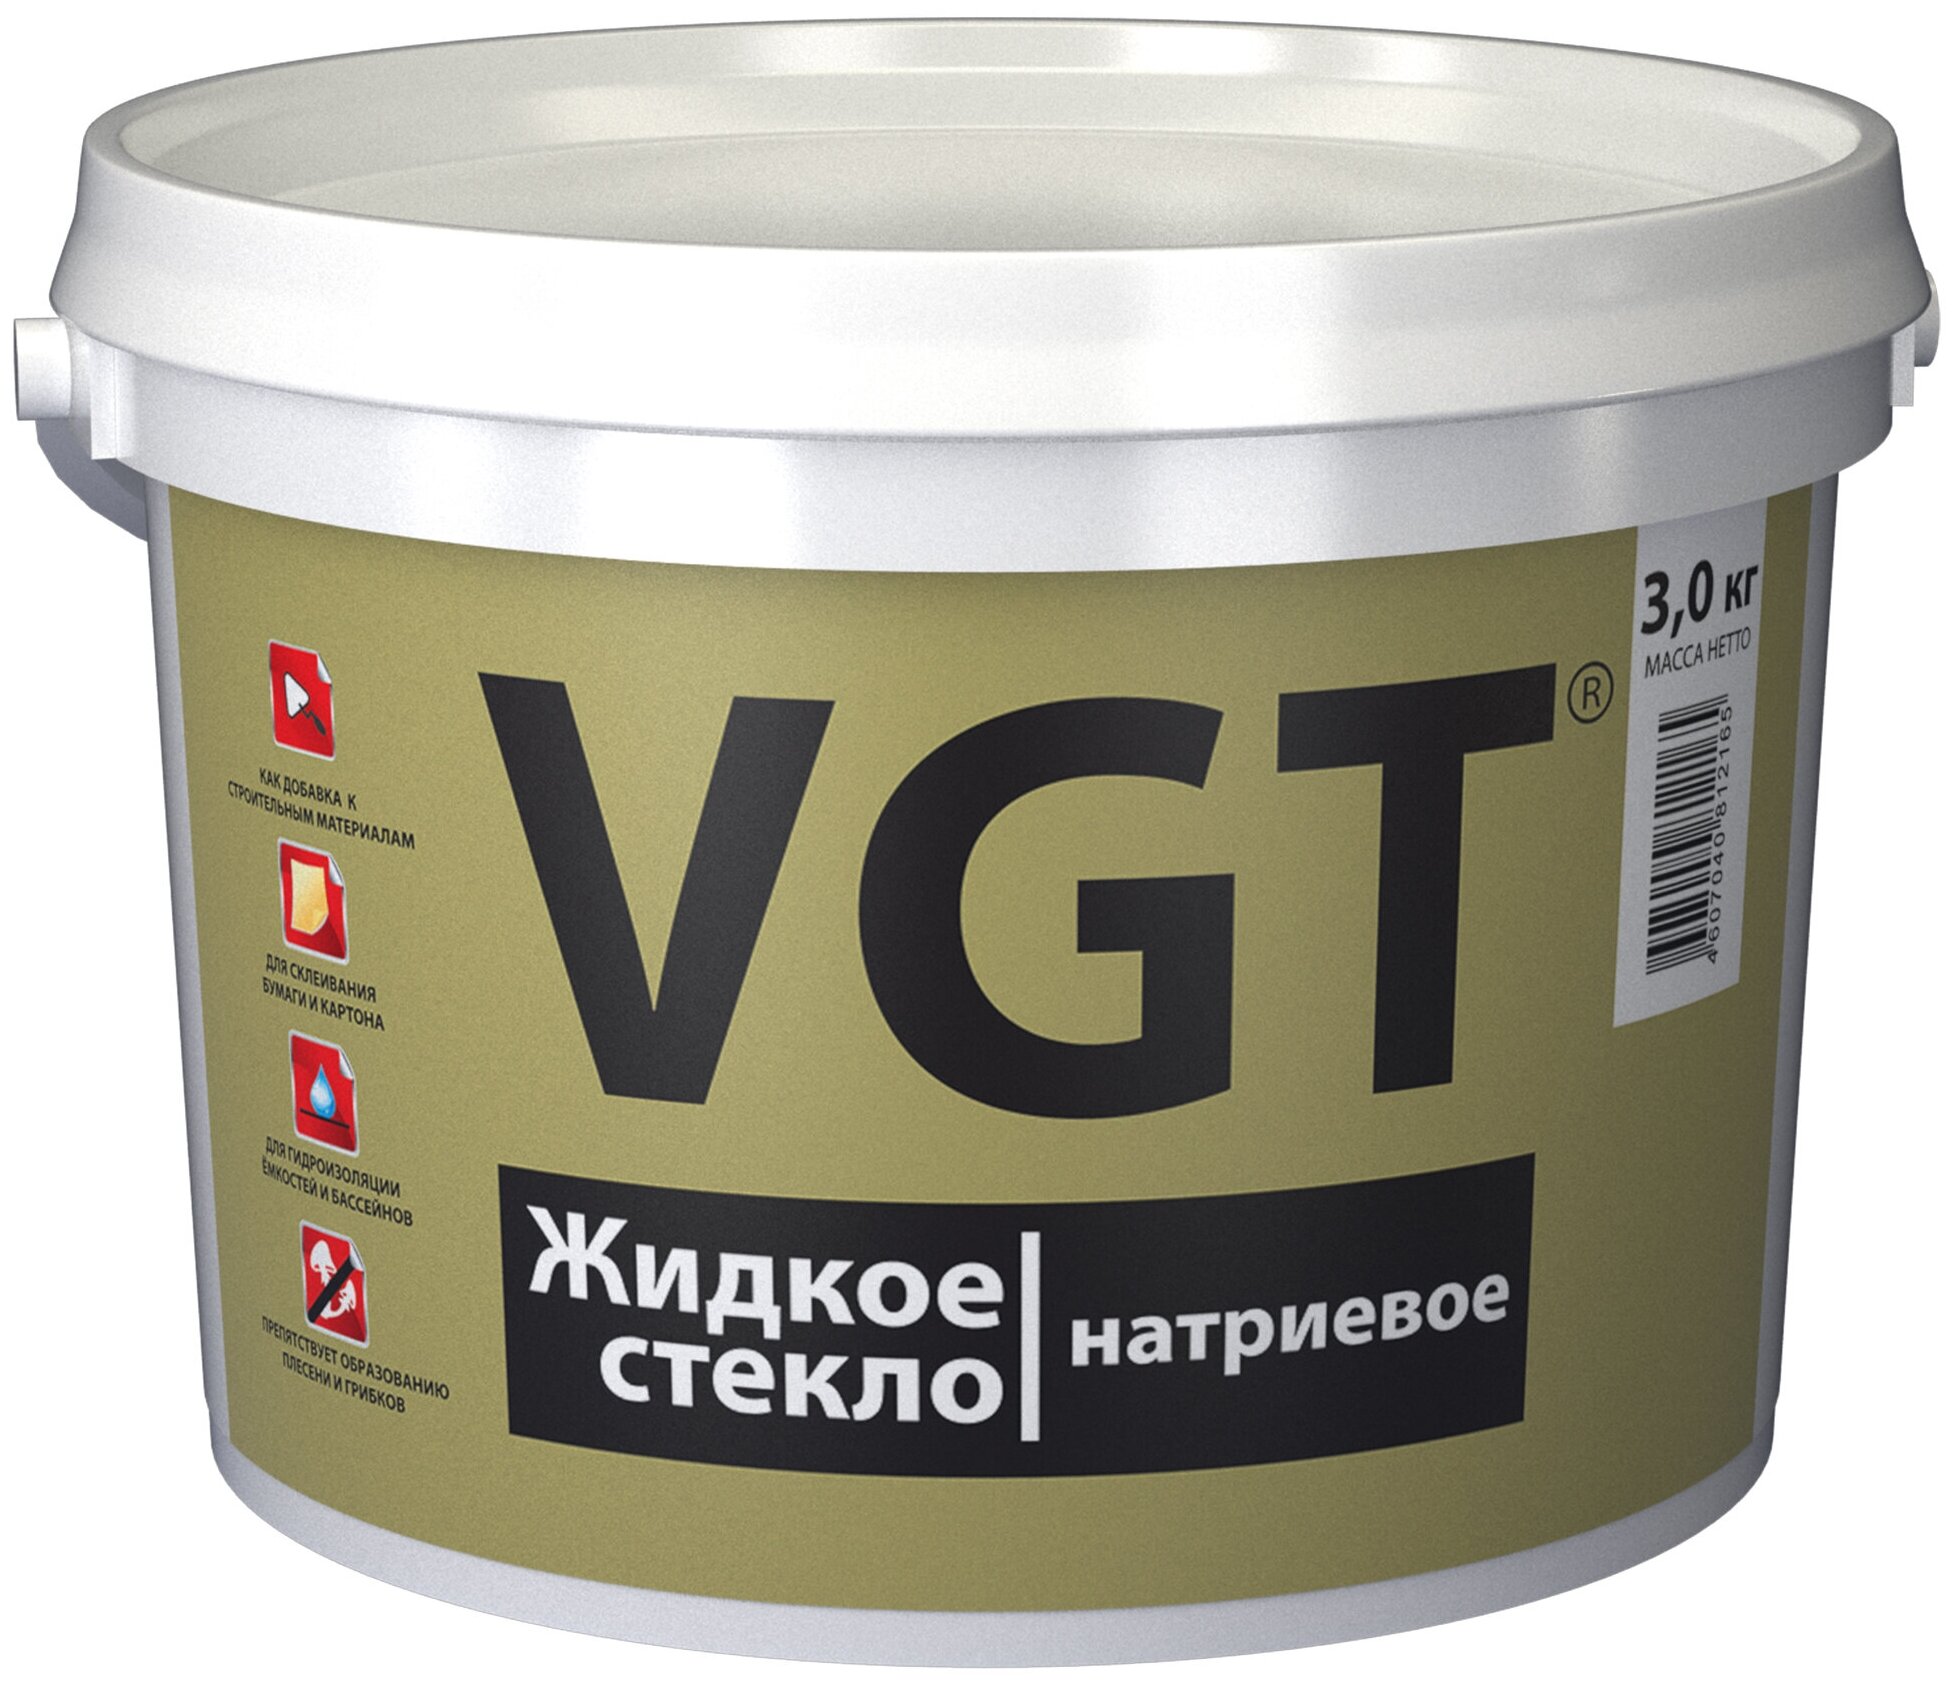 Стекло жидкое натриевое VGT (3кг)